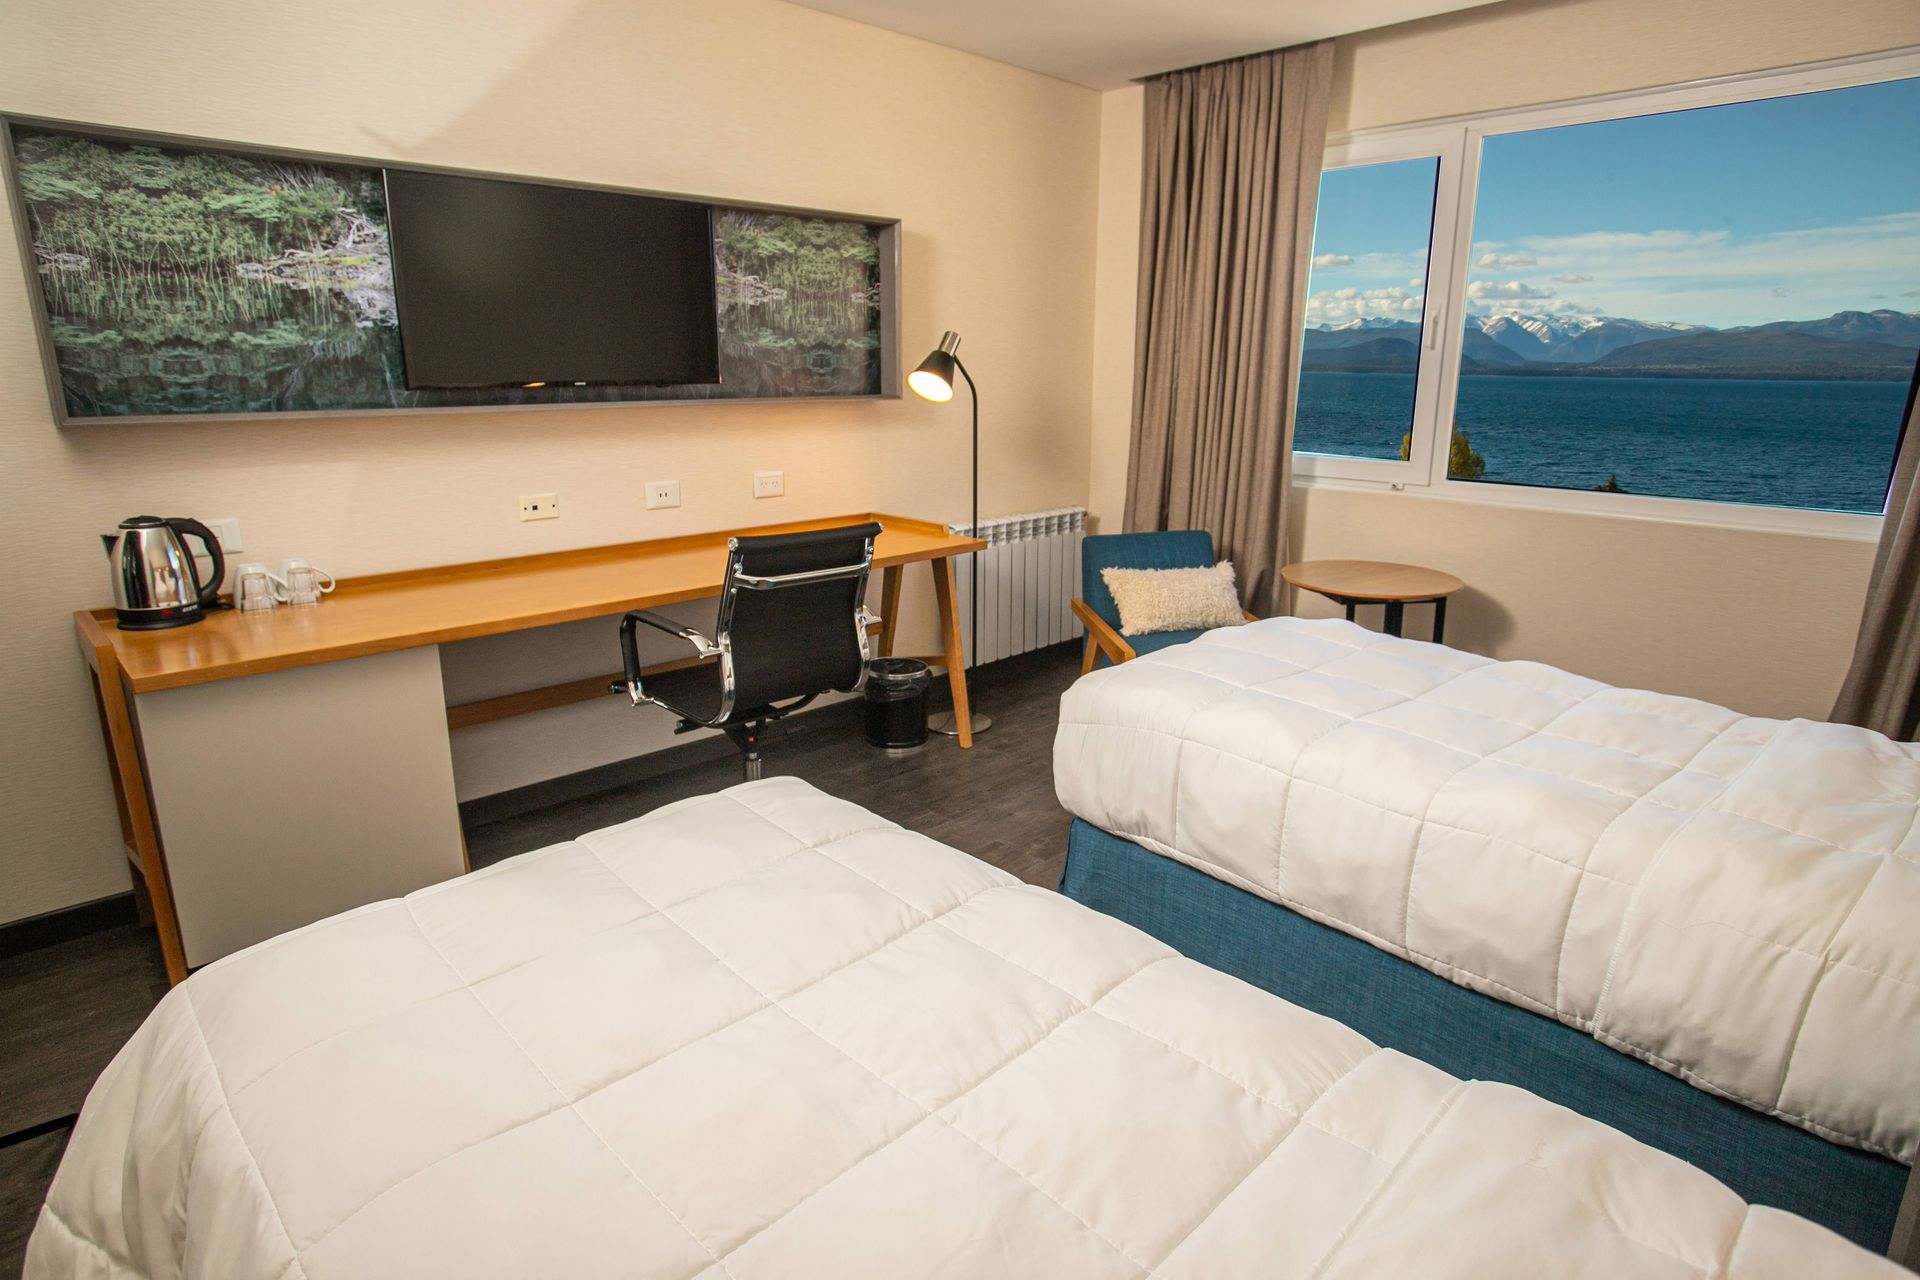 Una habitación de hotel con dos camas, un escritorio y una televisión.